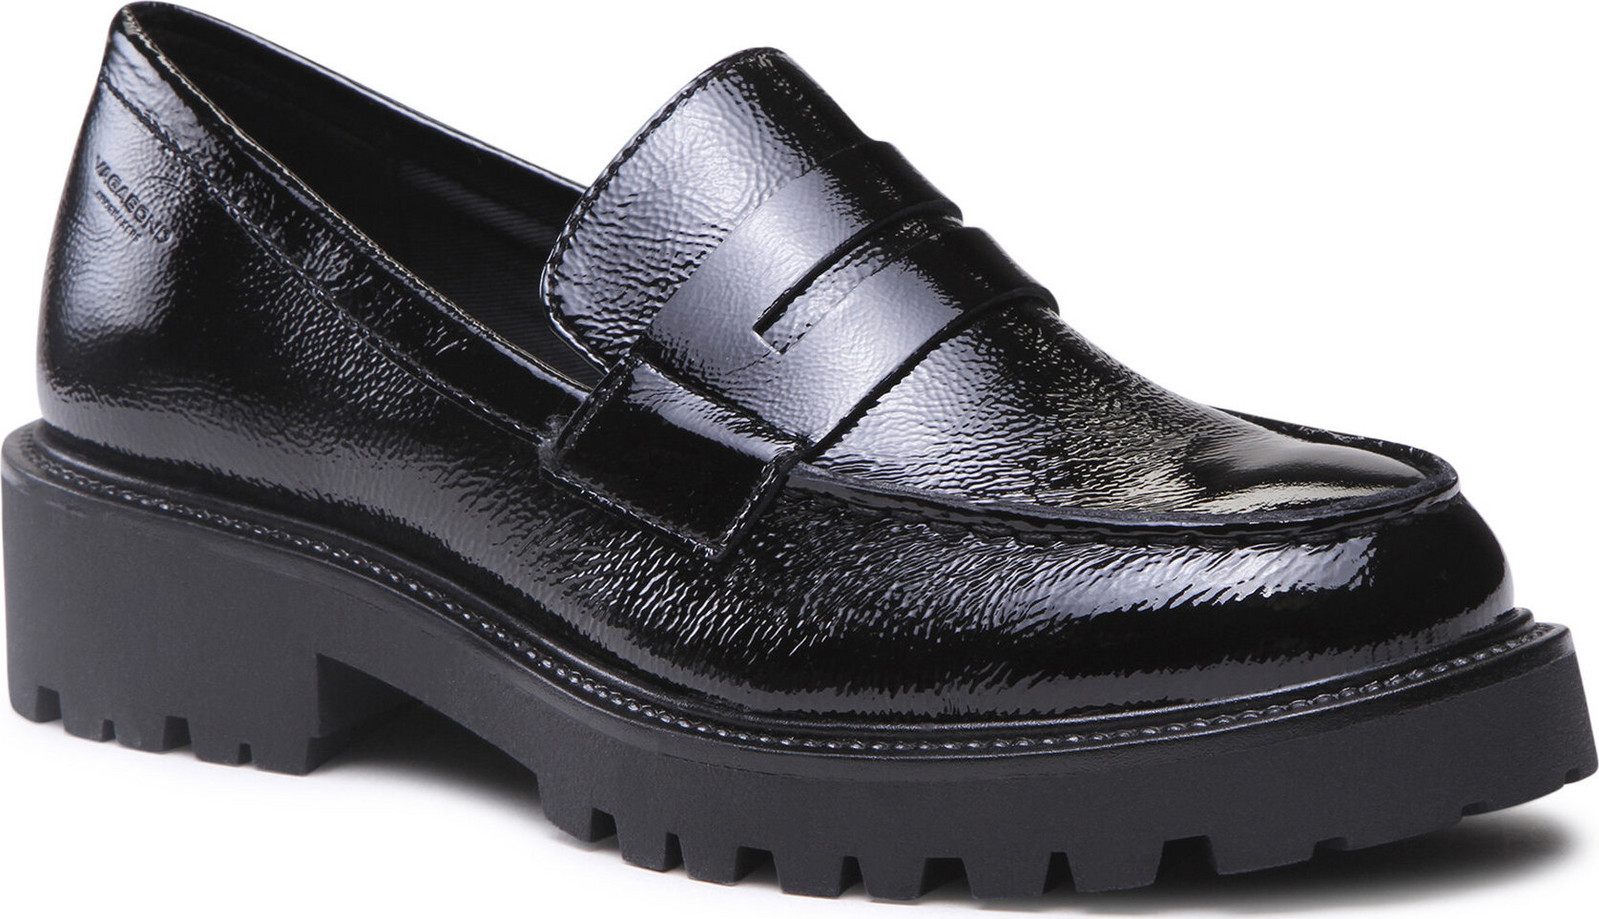 Loafersy Vagabond Shoemakers Kenova 5241-360-20 Černá